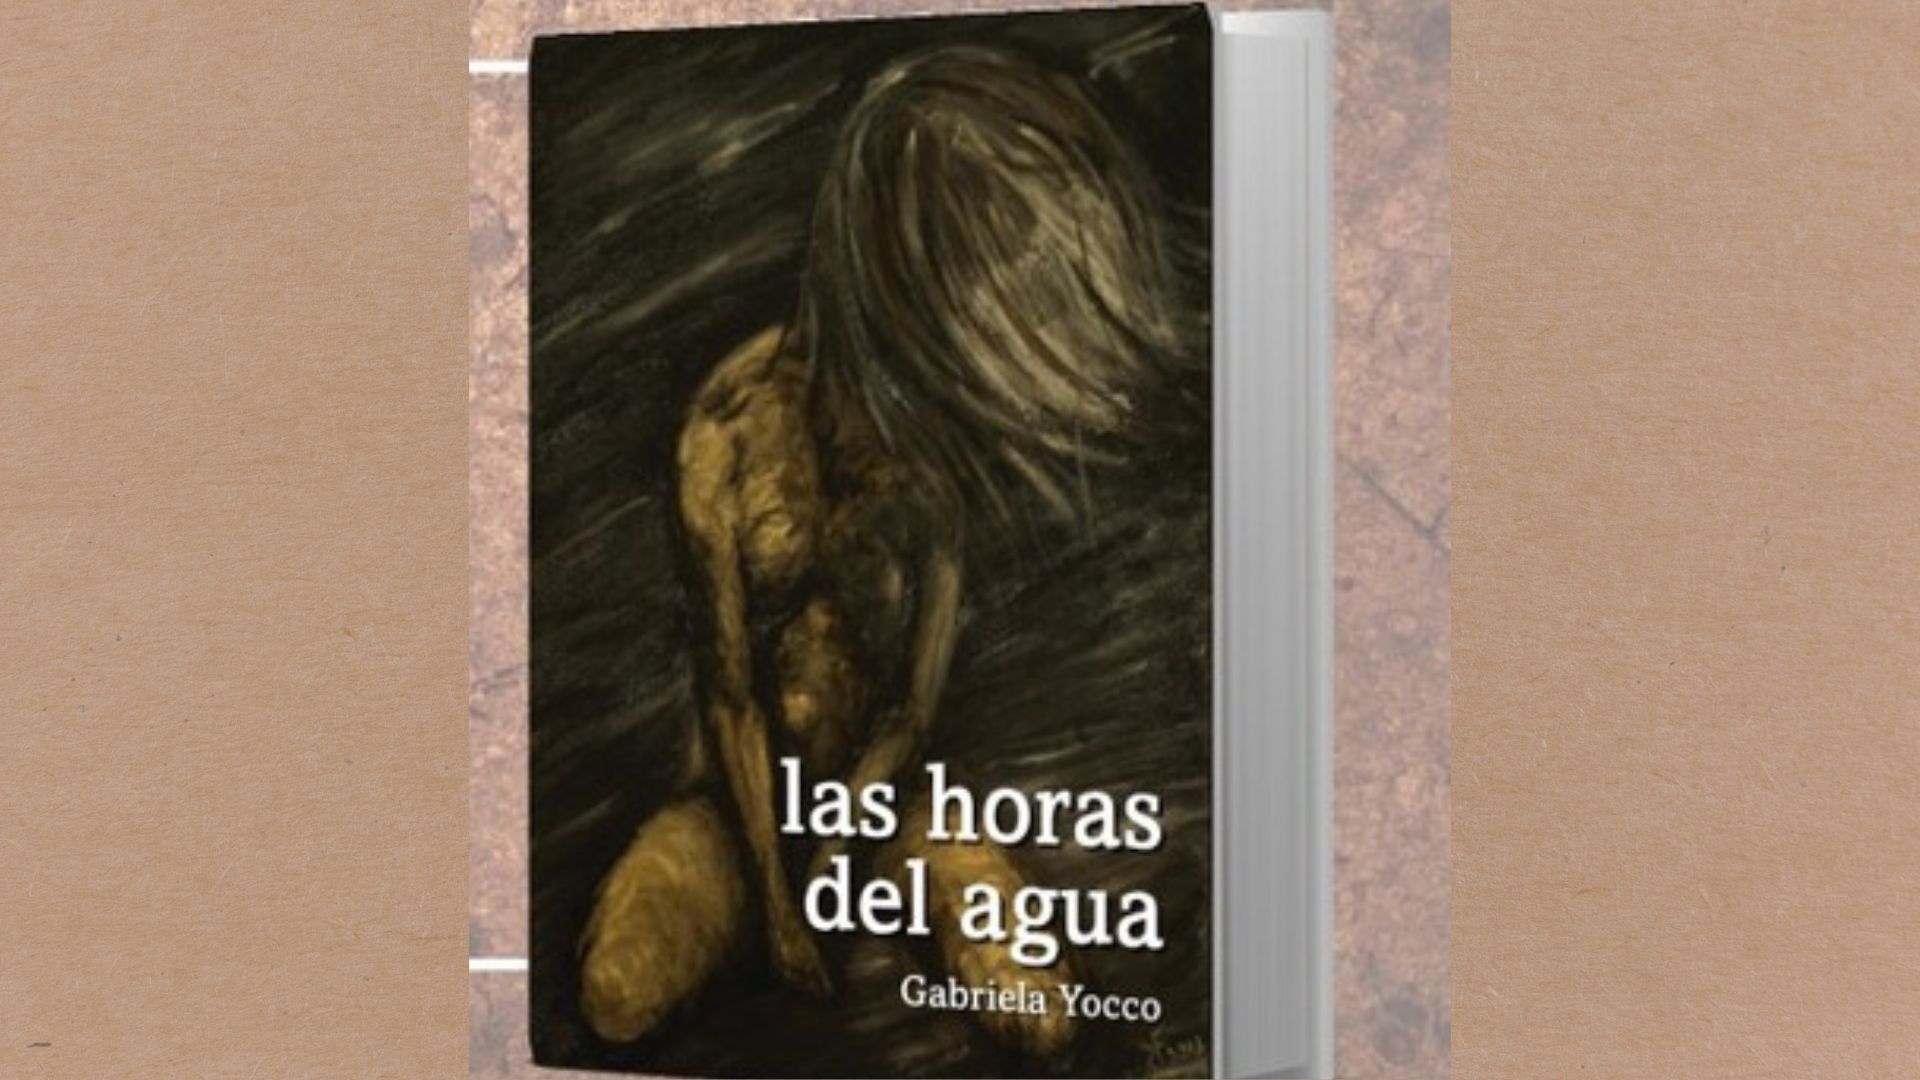 Este sábado la editorial morenense Ombligo Cuadrado presentará un poemario de Gabriela Yocco